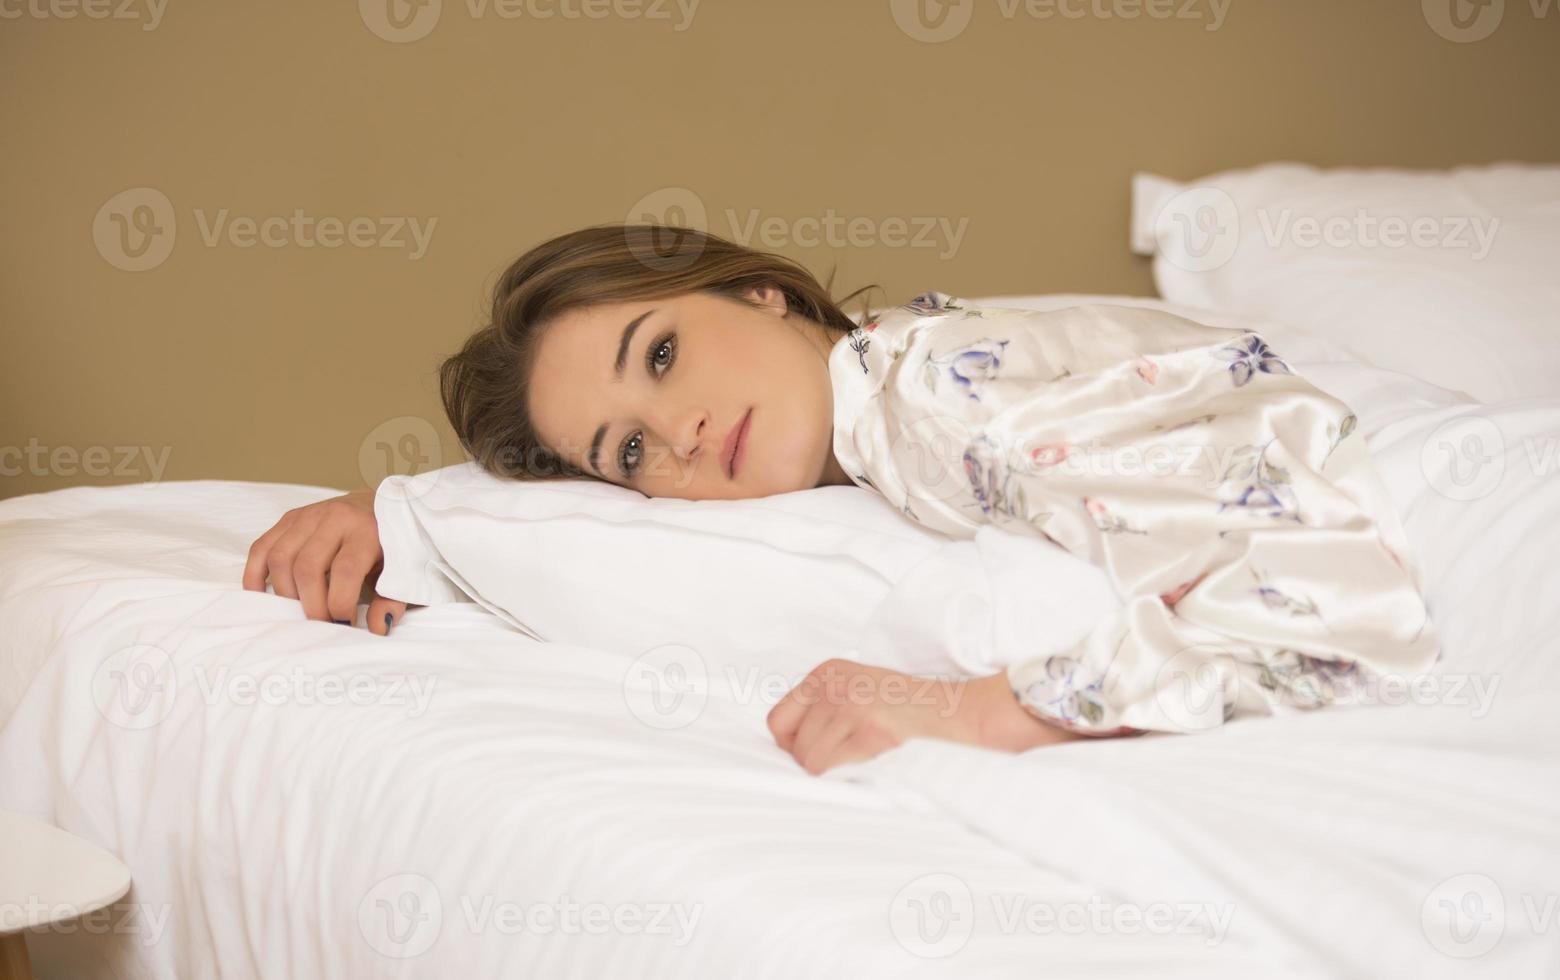 vredig sereen mooi jong dame slijtage pyjama aan het liegen in slaap ontspannende slapen in knus wit bed Aan zacht hoofdkussen resting foto